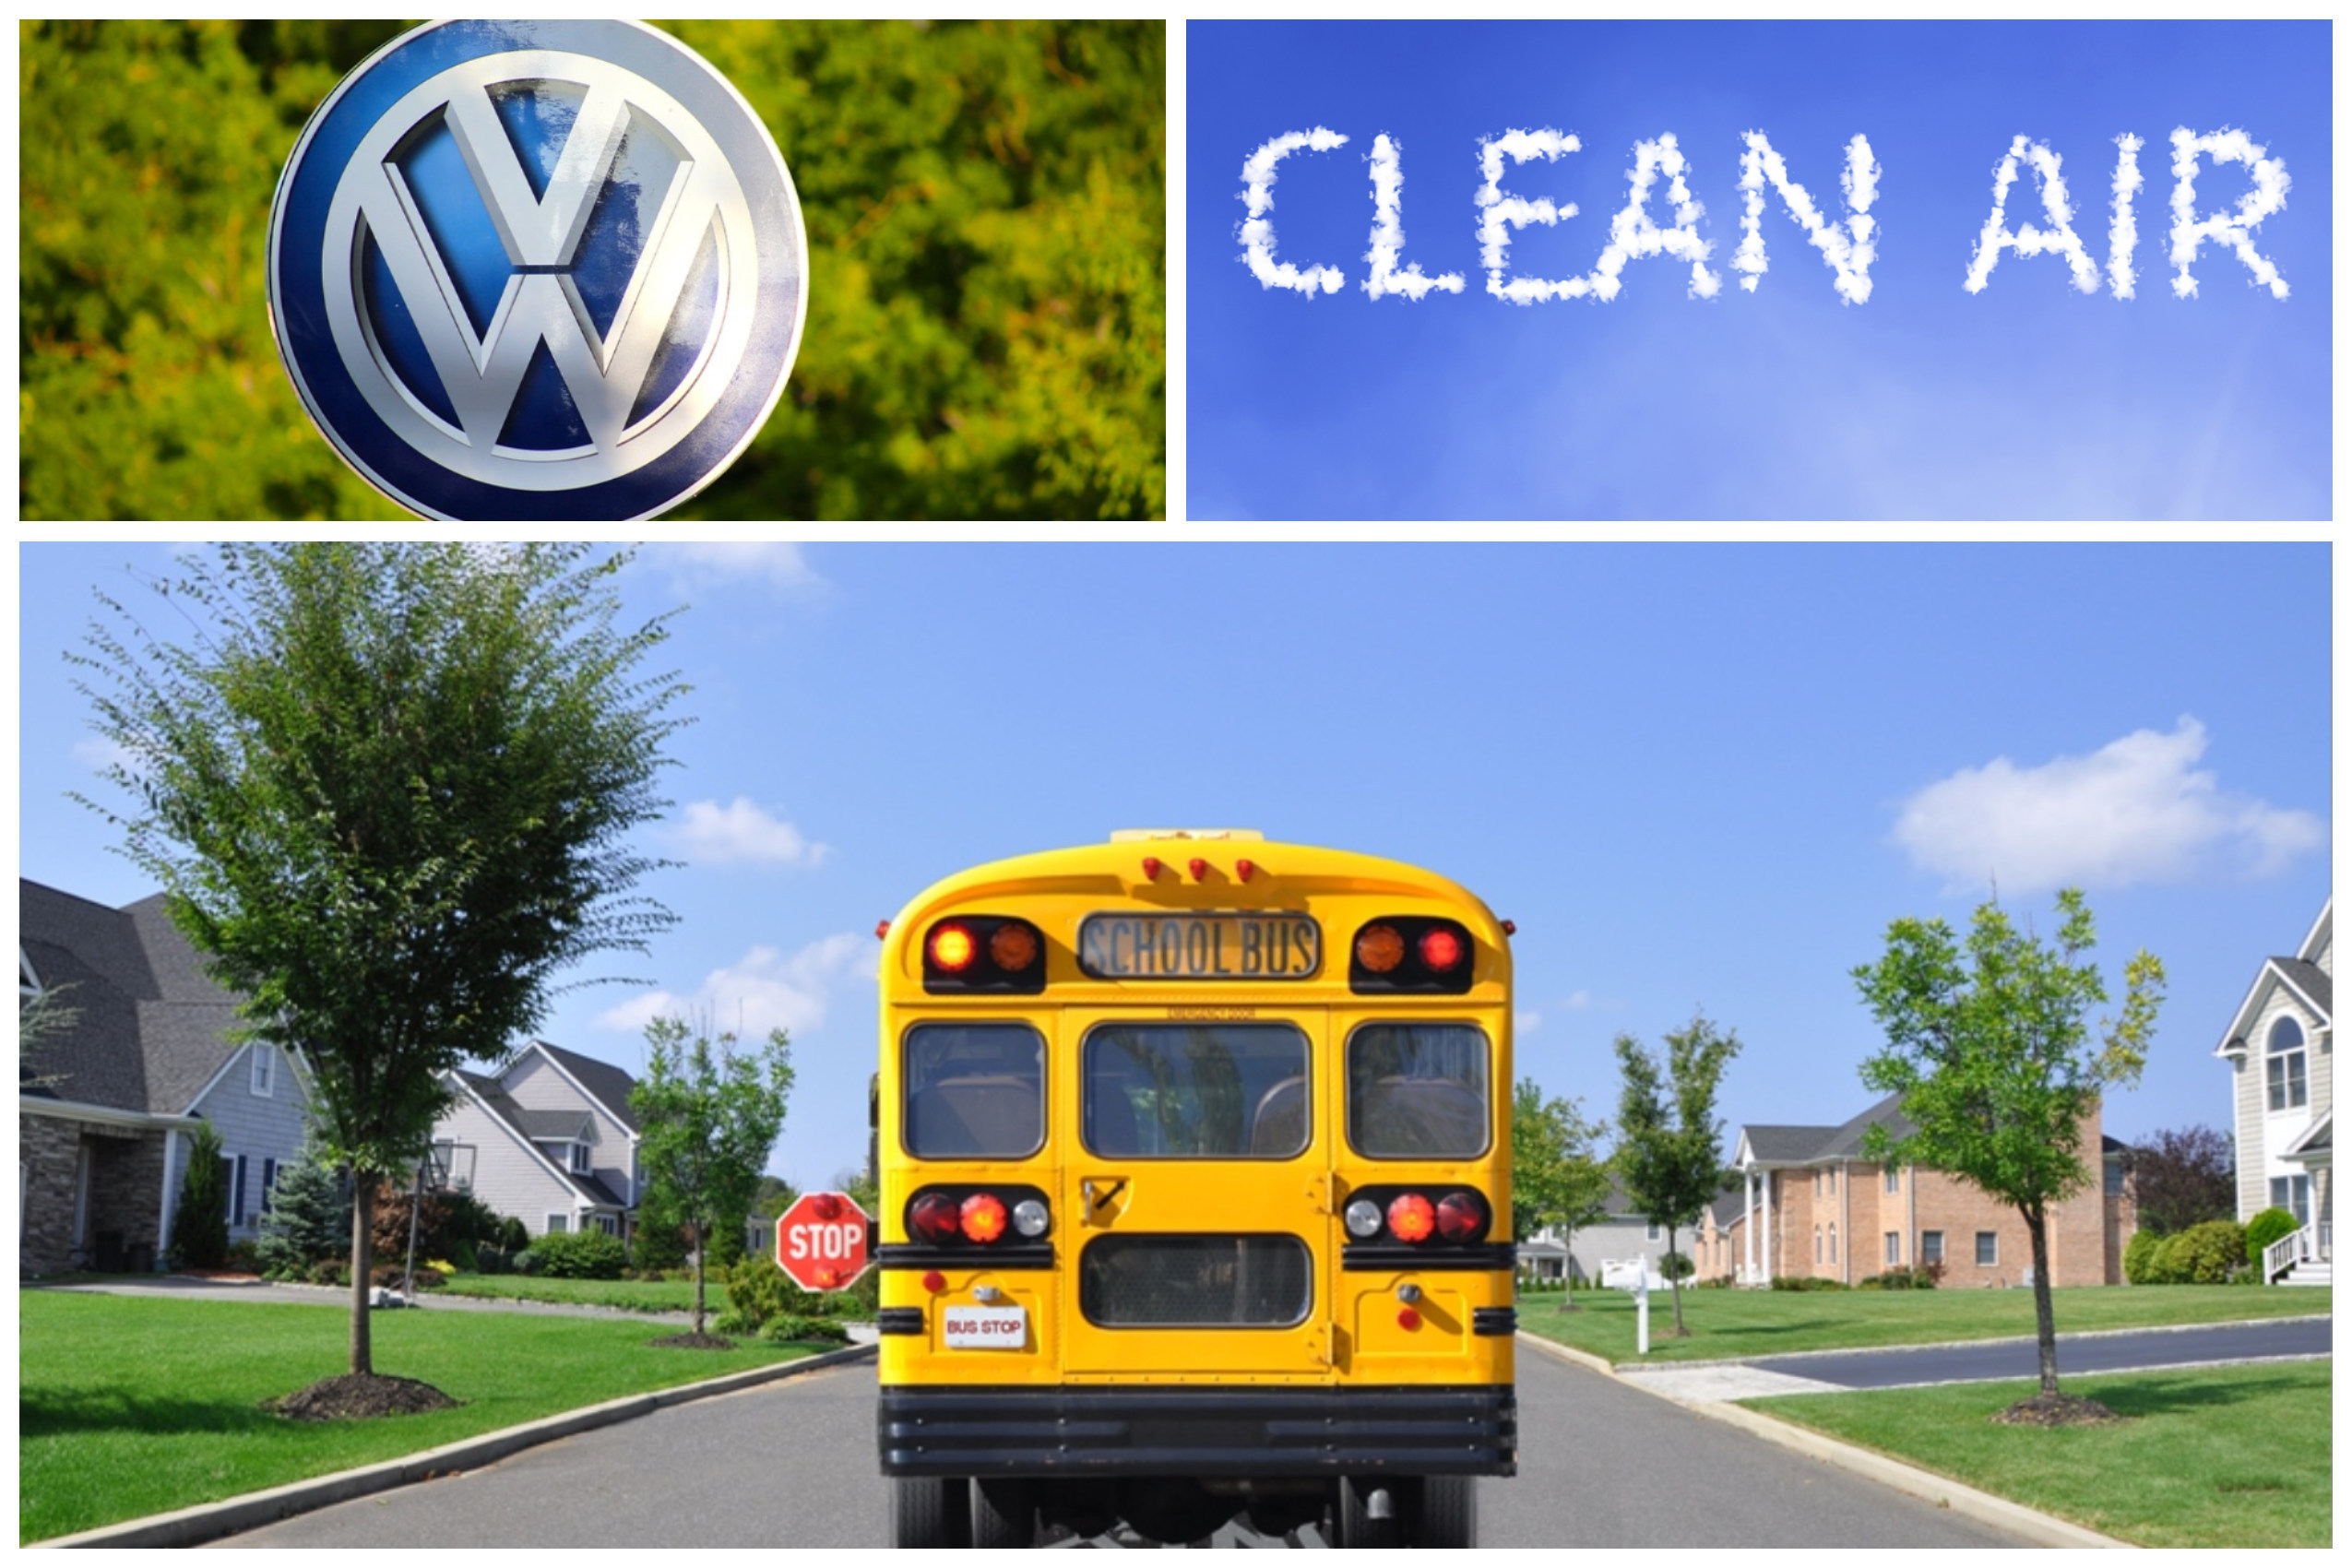 VW CleanAir image